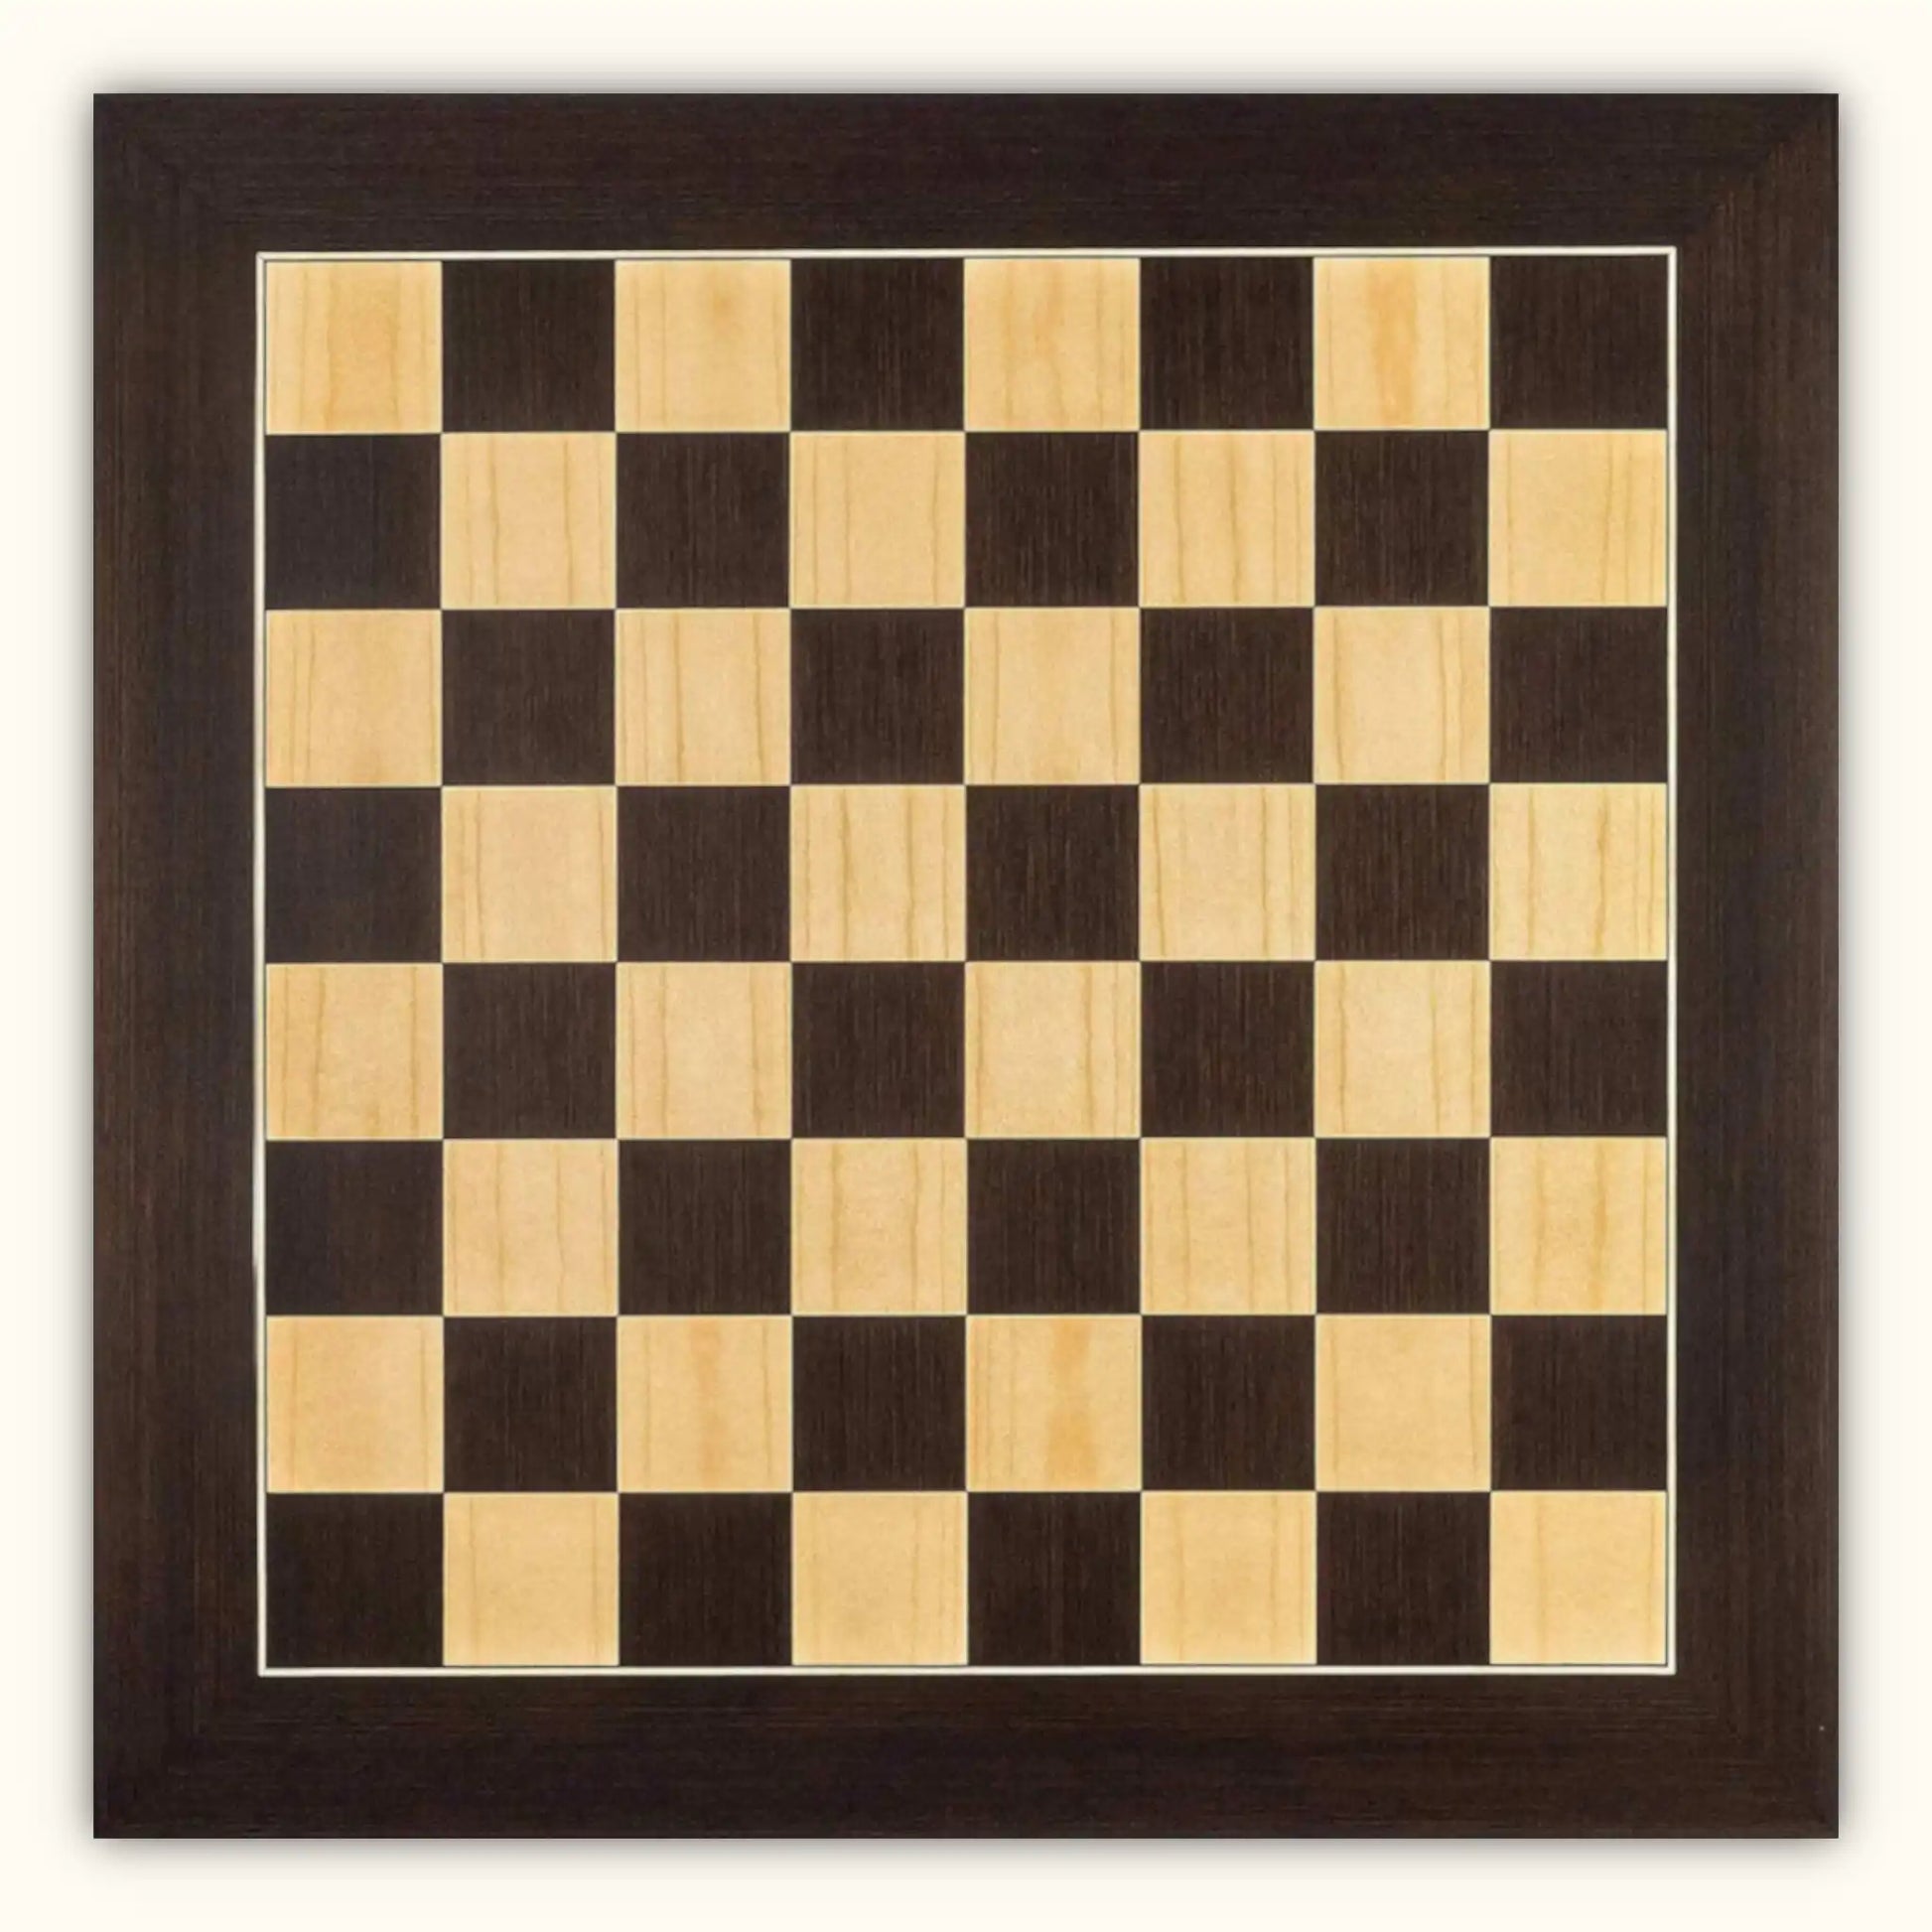 Chessboard wenge deluxe 55 mm